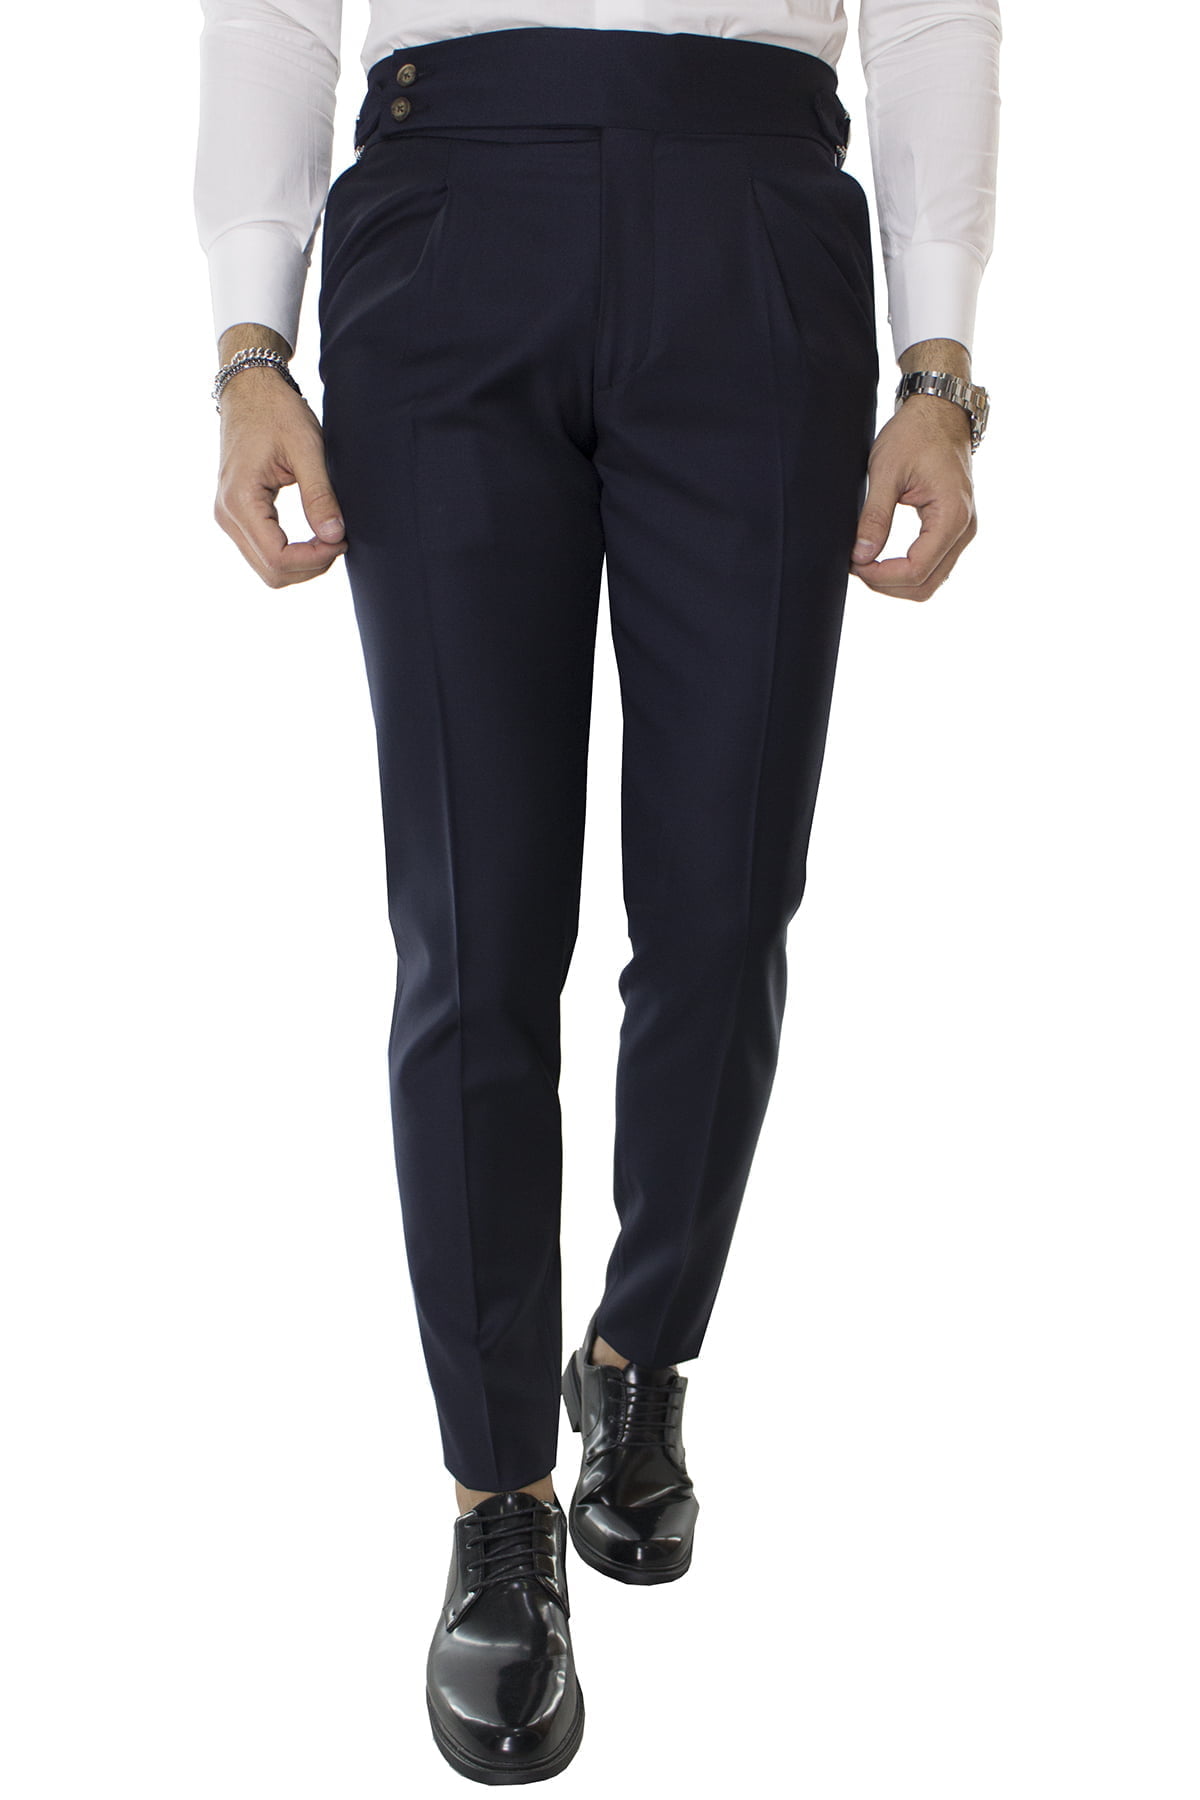 Carillo Moda Pantalone Uomo Blu in Lana Vita Alta con Pinces e Fibbie Laterali Vitale barberis canonico